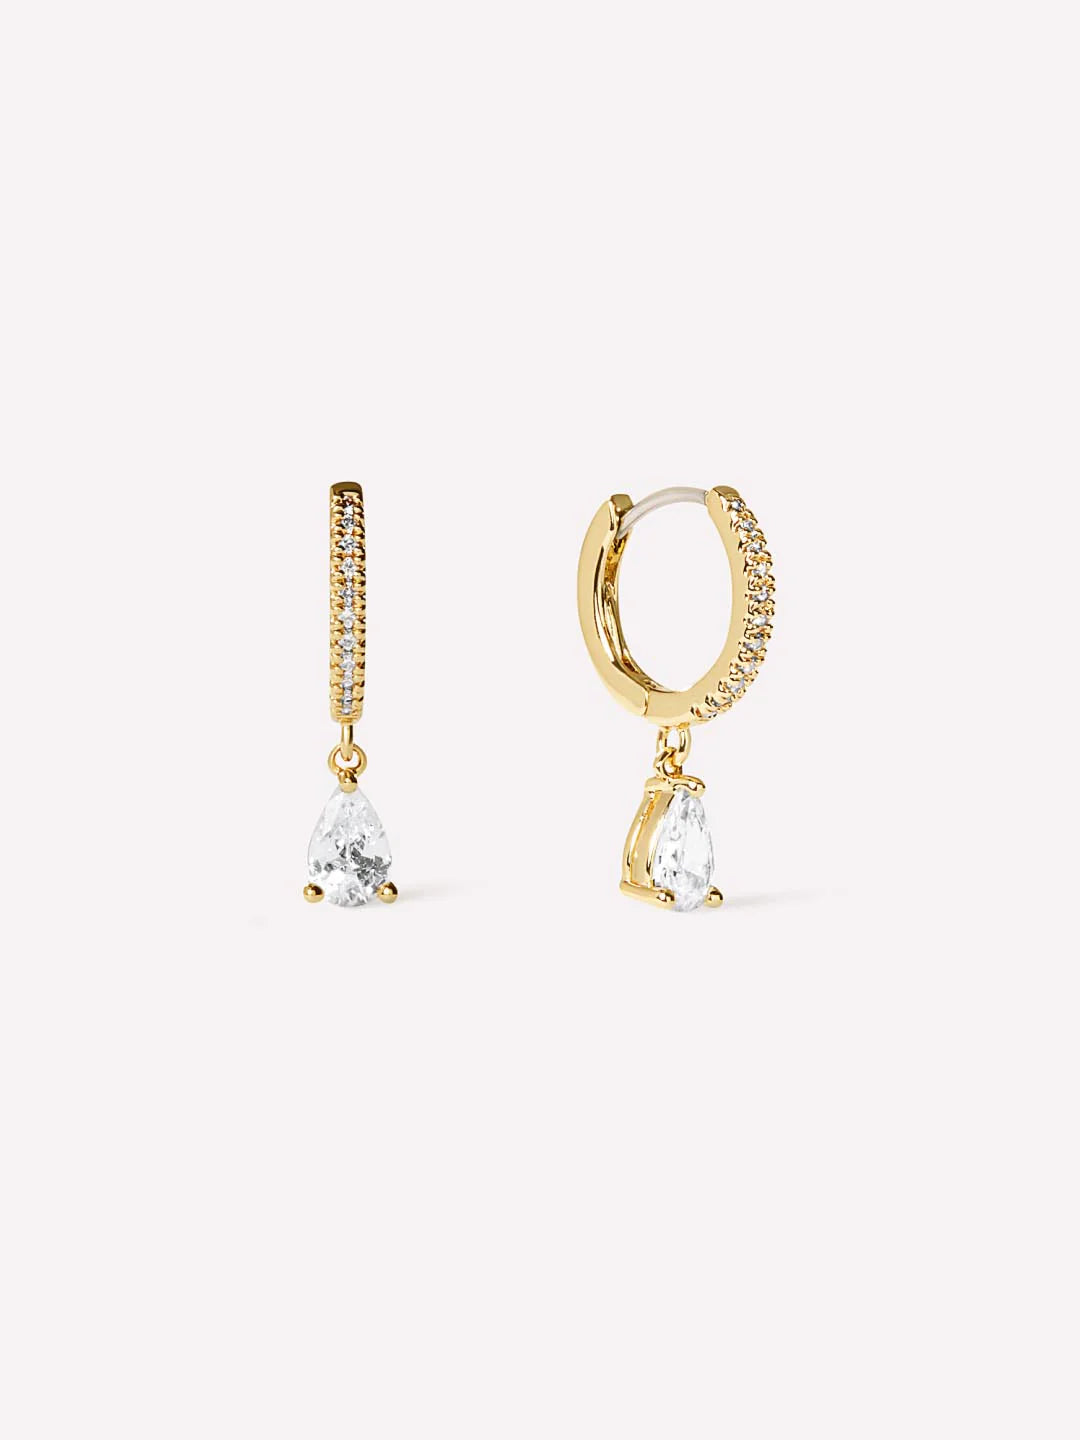 Ana-Luisa-Jewelry-Earrings-Drop-Earrings-Delicate-Huggie-Hoops-Elise-Gold